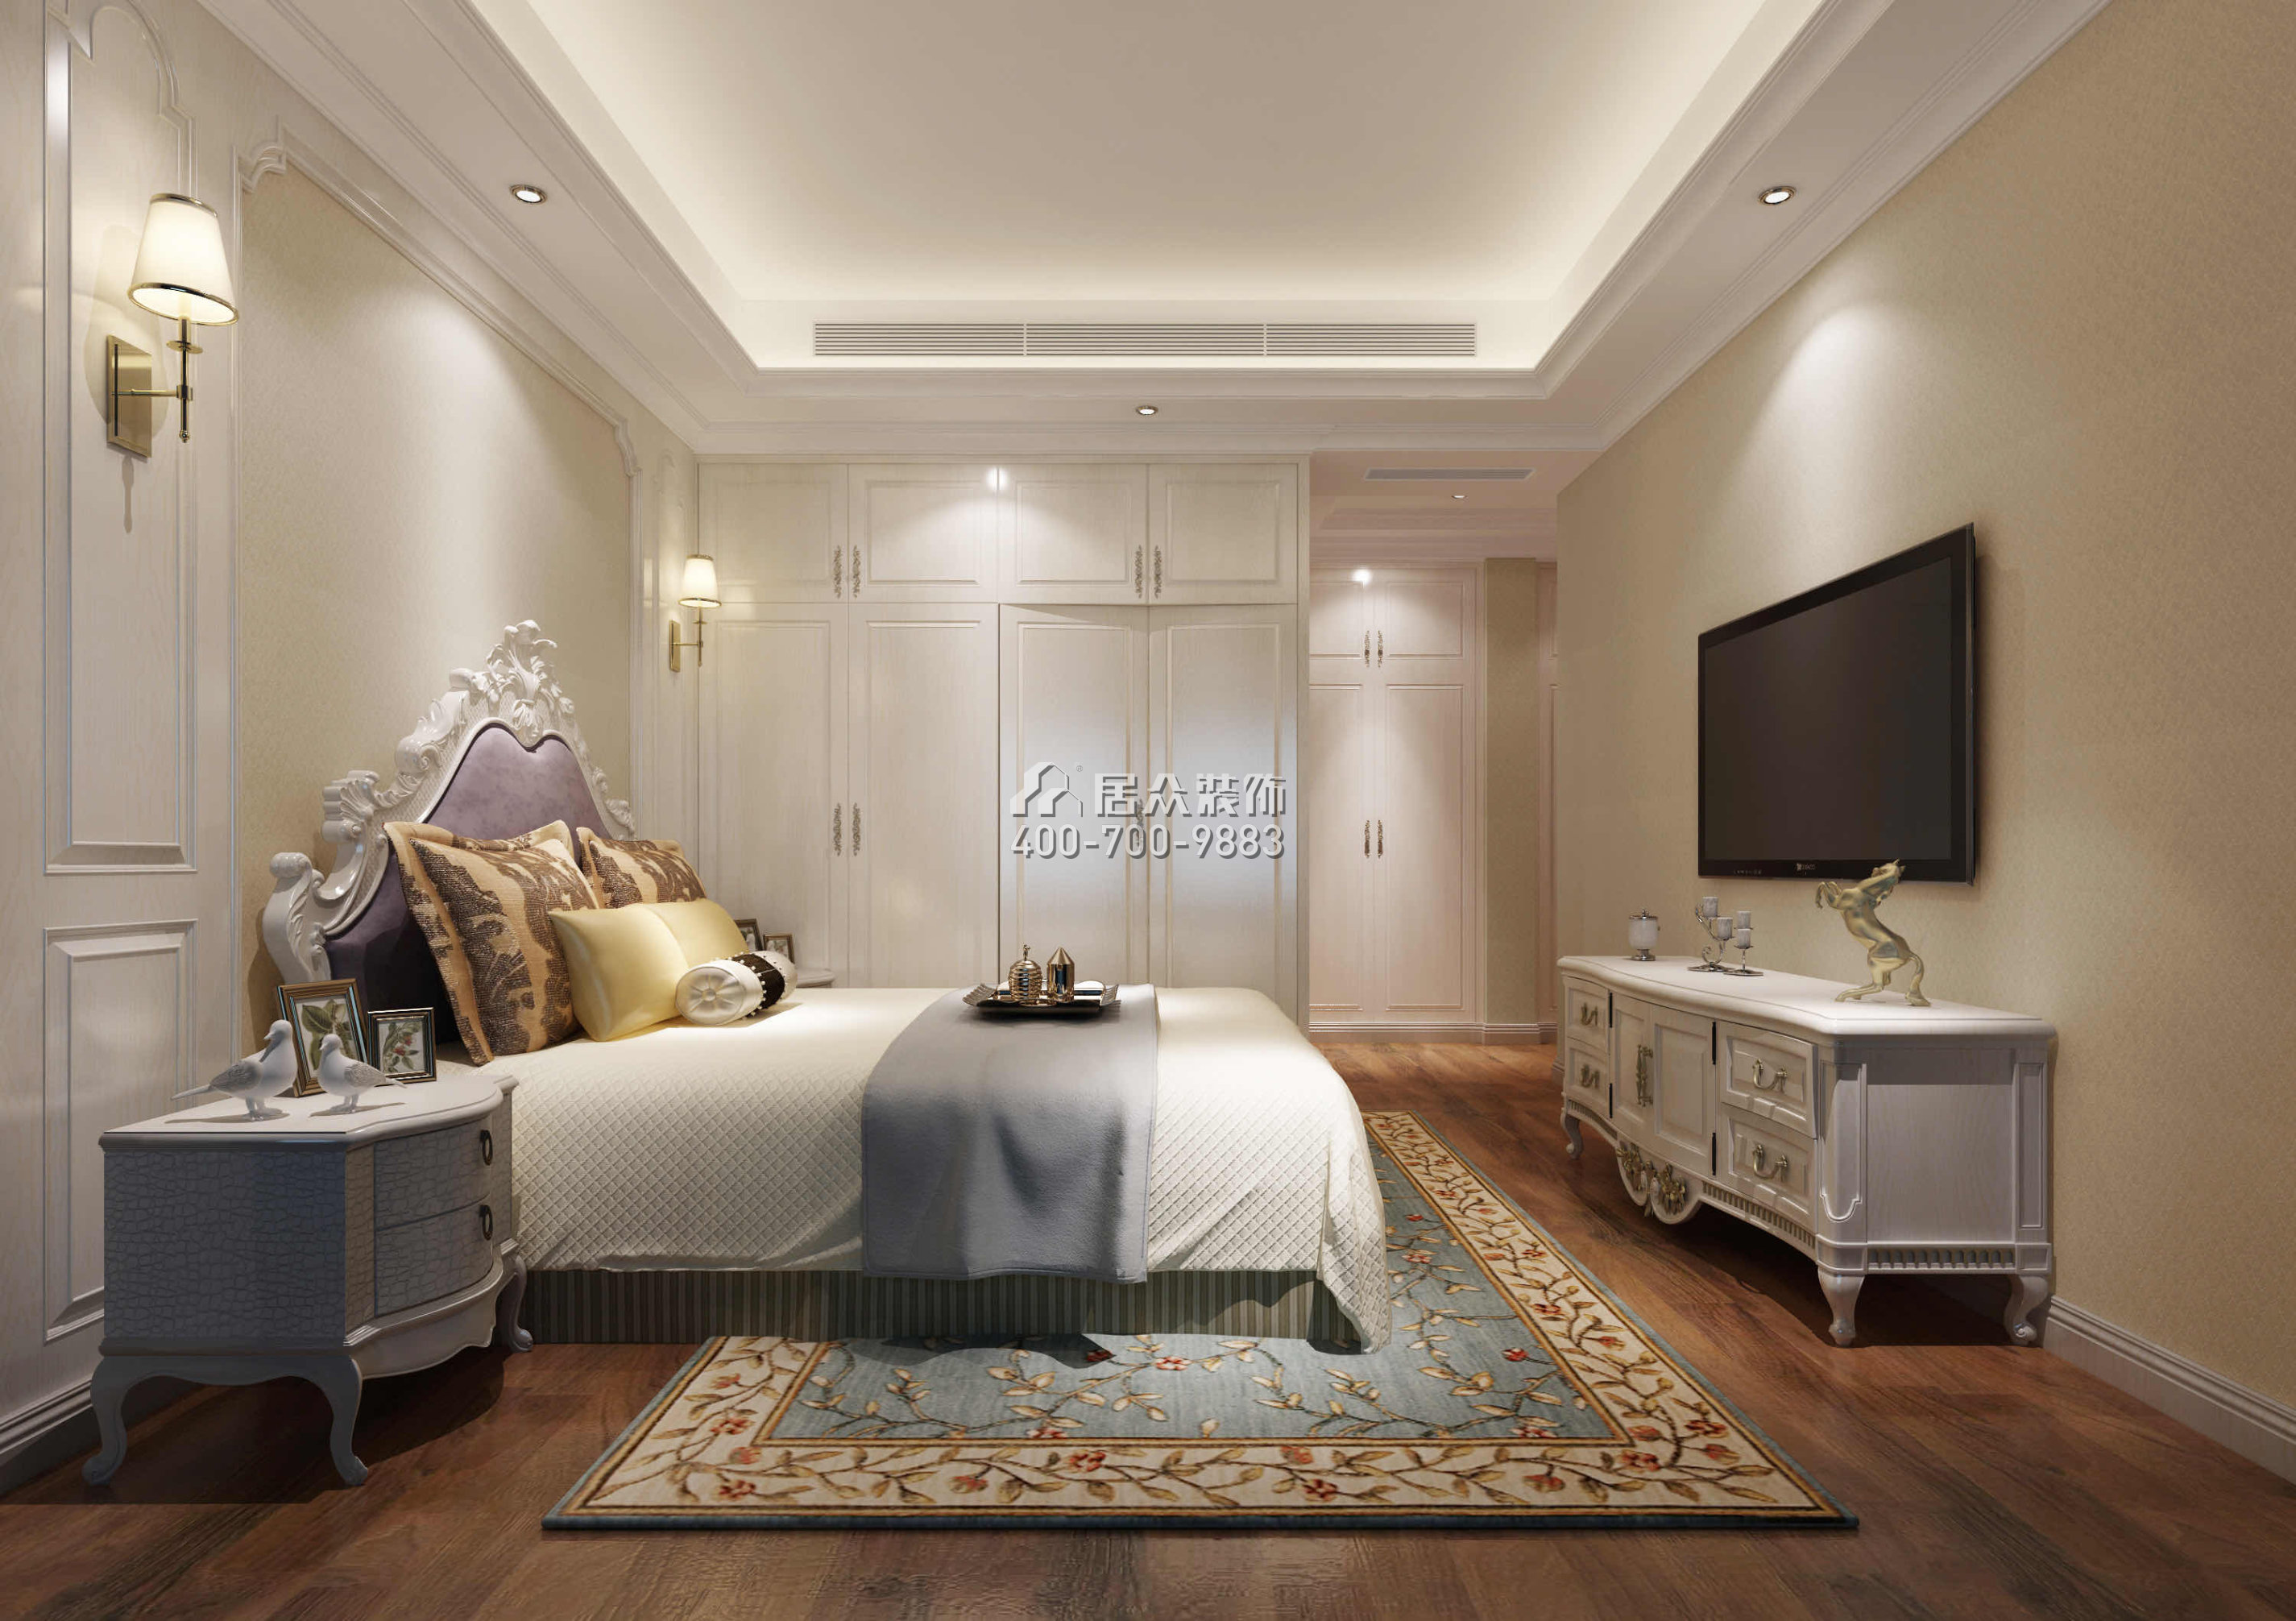 勤诚达132平方米欧式风格平层户型卧室装修效果图